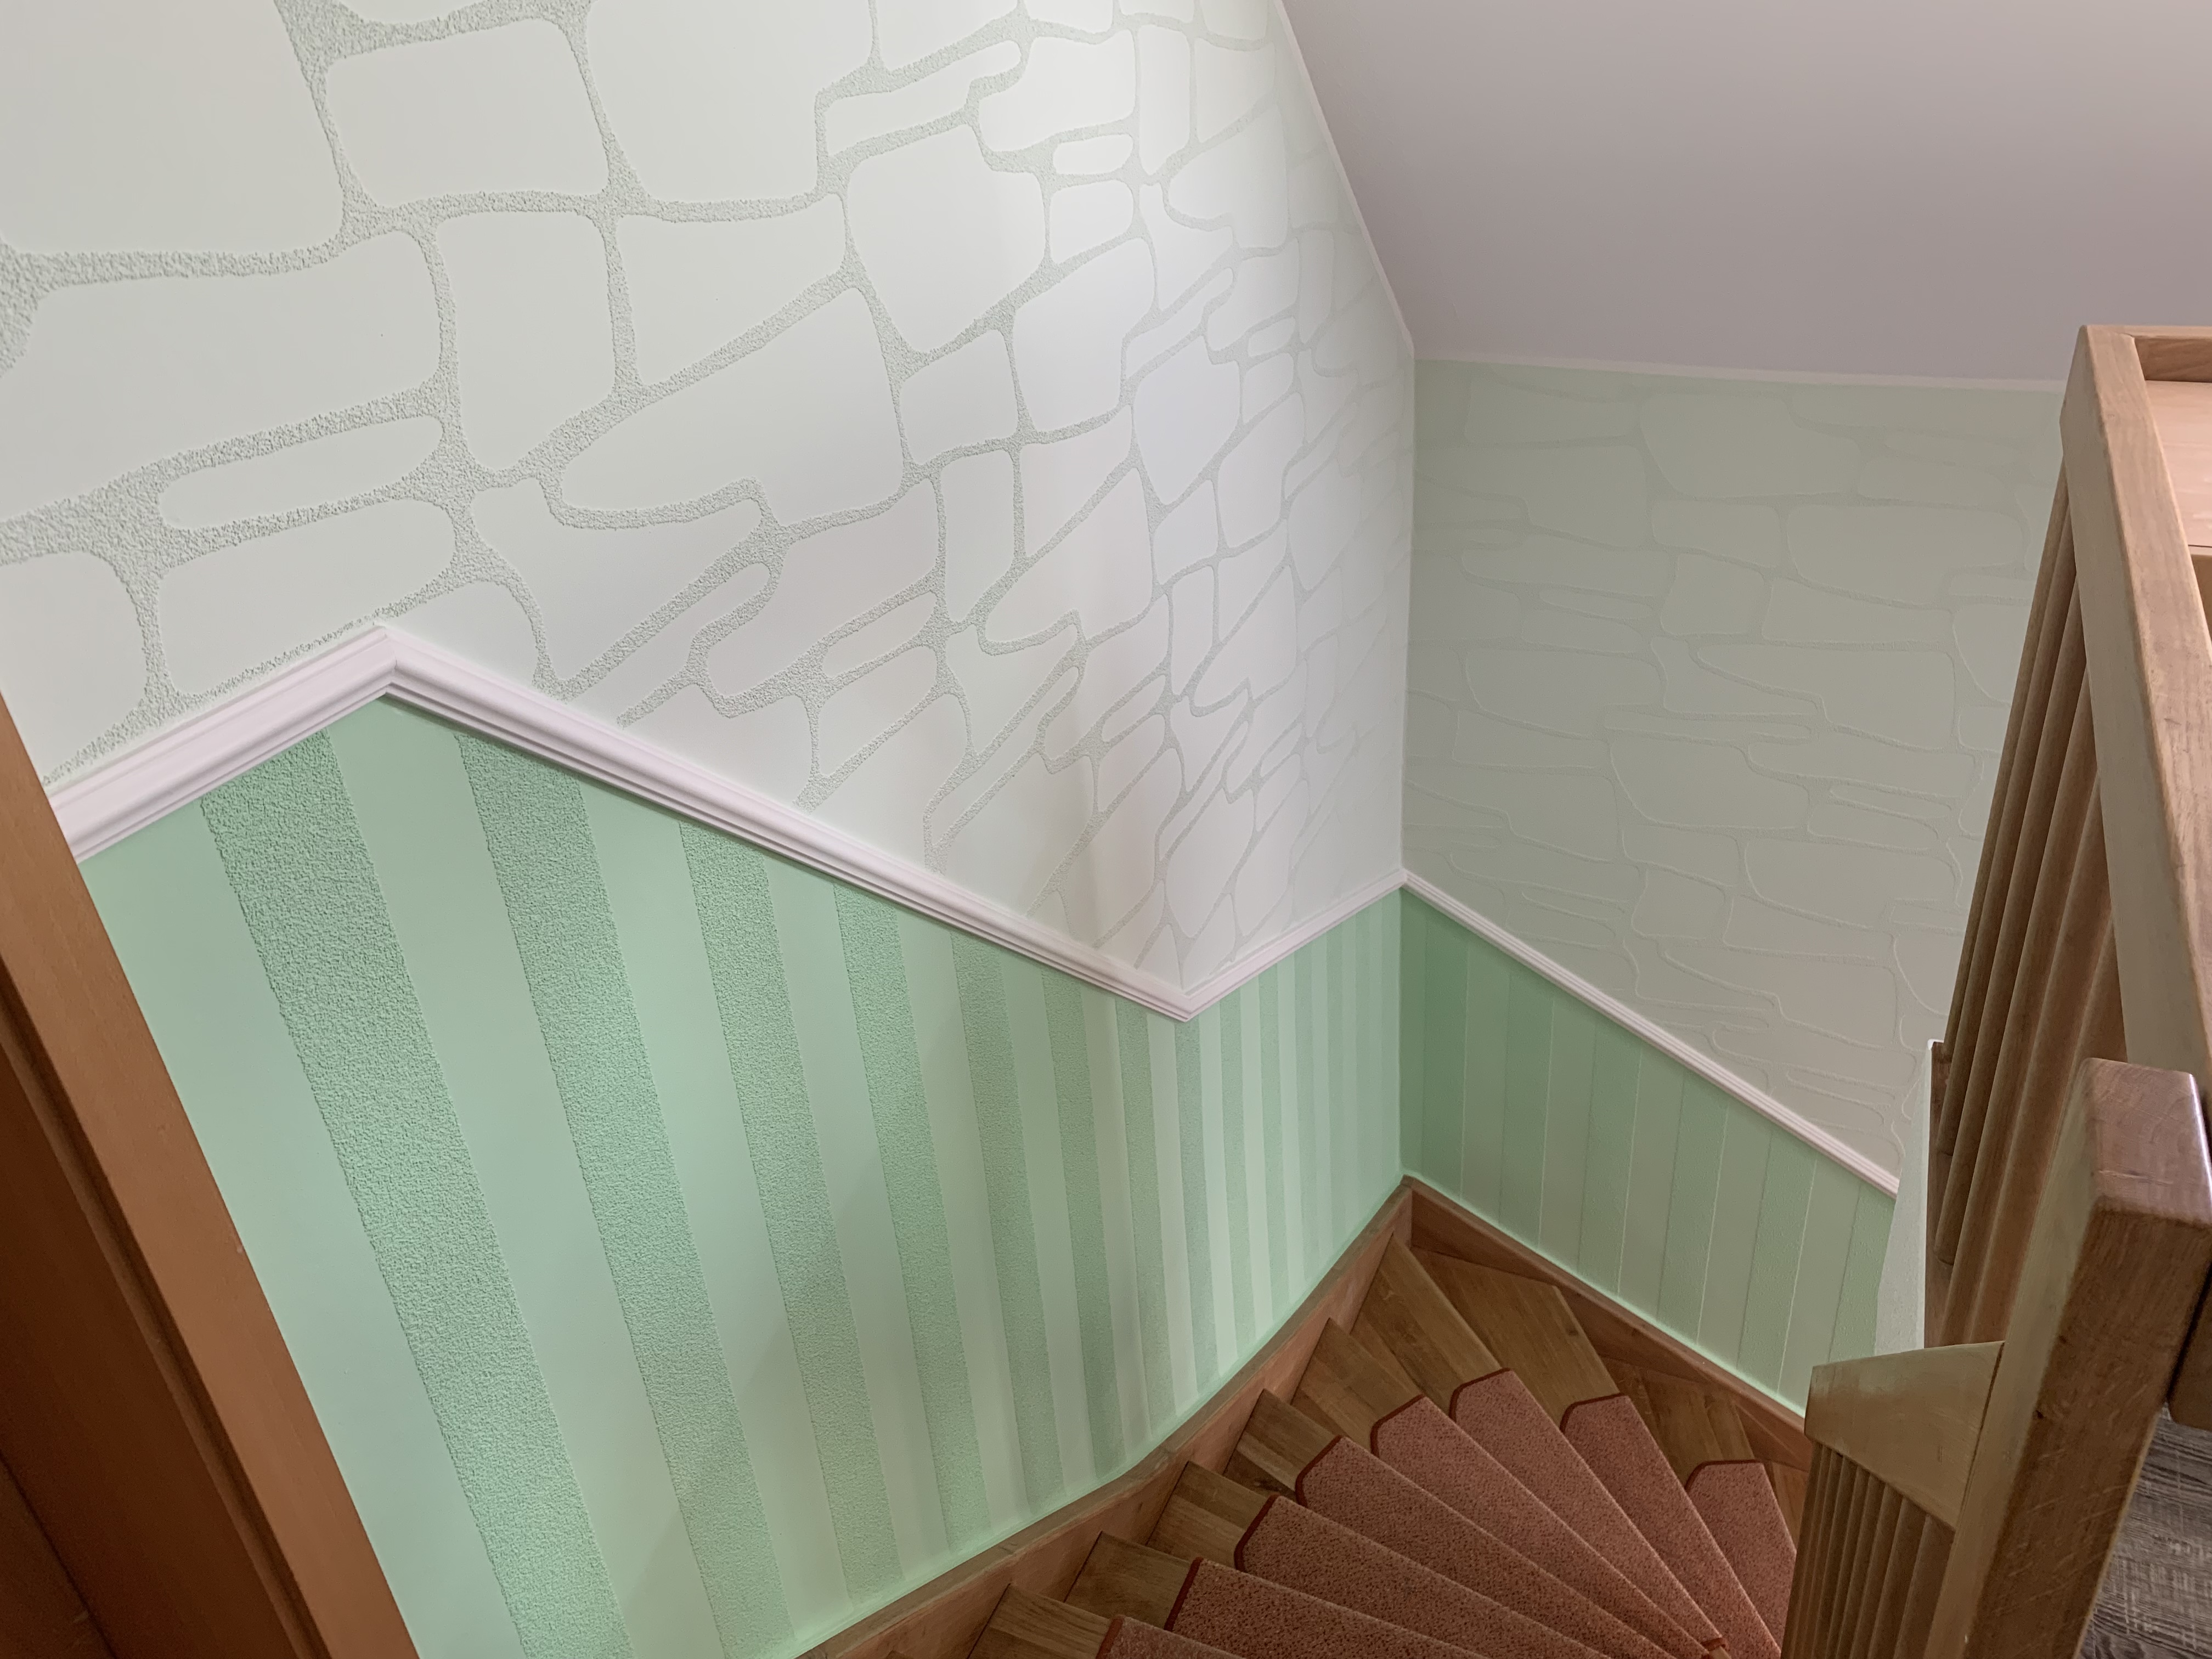 Treppenhausgestaltung mit Designtapeten Profilleisten u. Farbliche Harmonie.